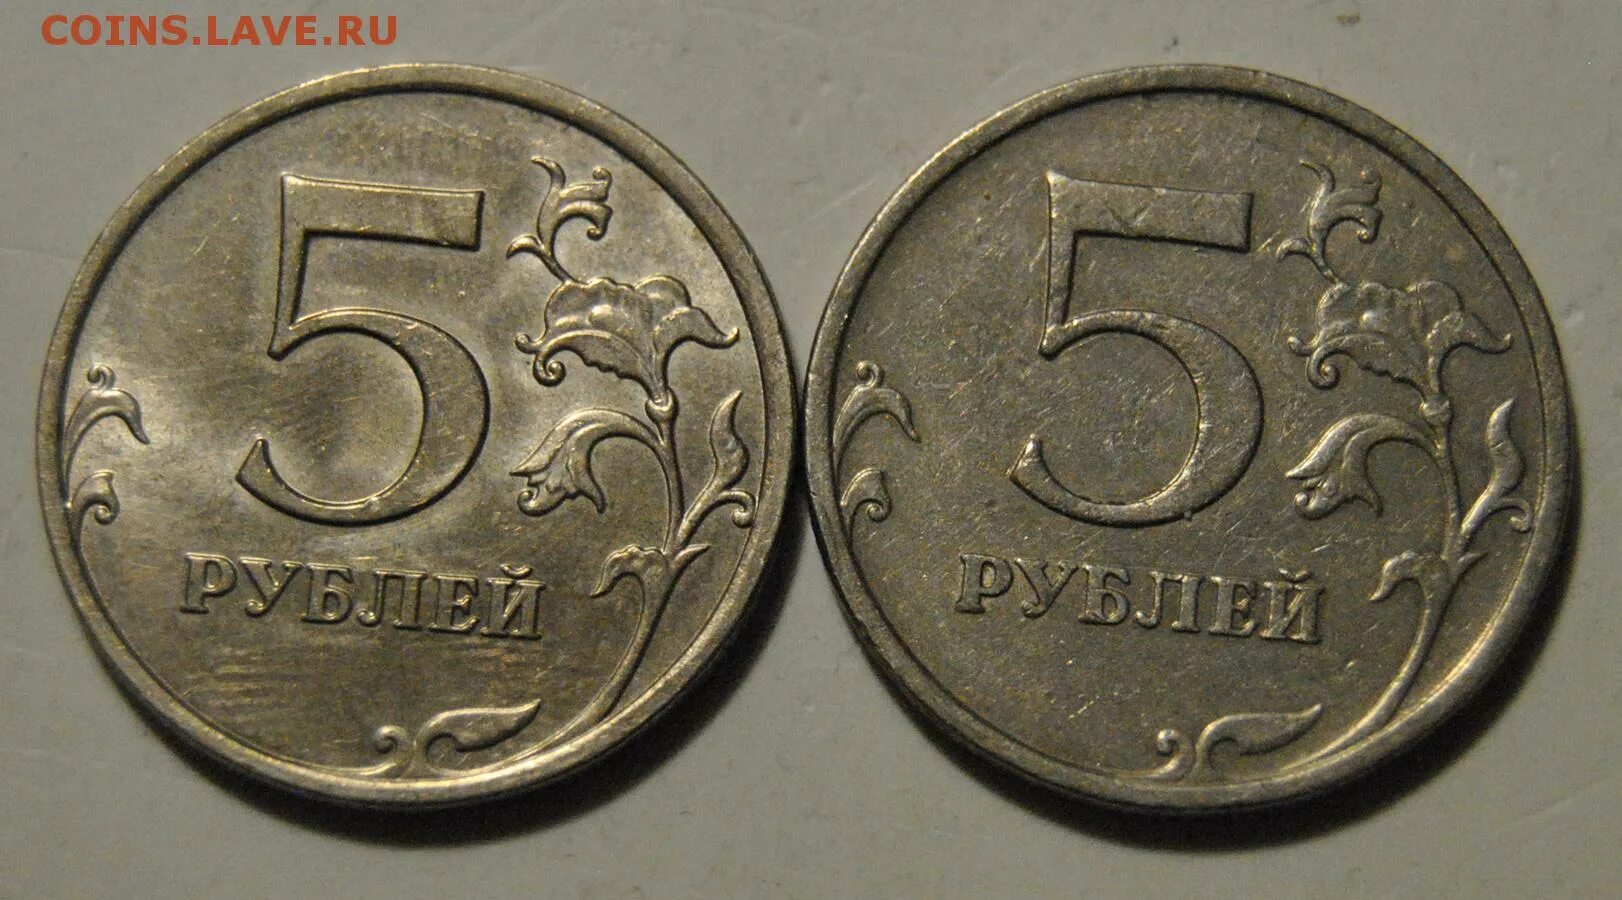 5 рублей 2009 ммд. 5 Рублей 2009 года немагнитные. 2 Рубля 2009 ММД (немагнитная). 5 Рублей 2009 СПМД немагнитная. Цена бракованных монет 5 рублей.